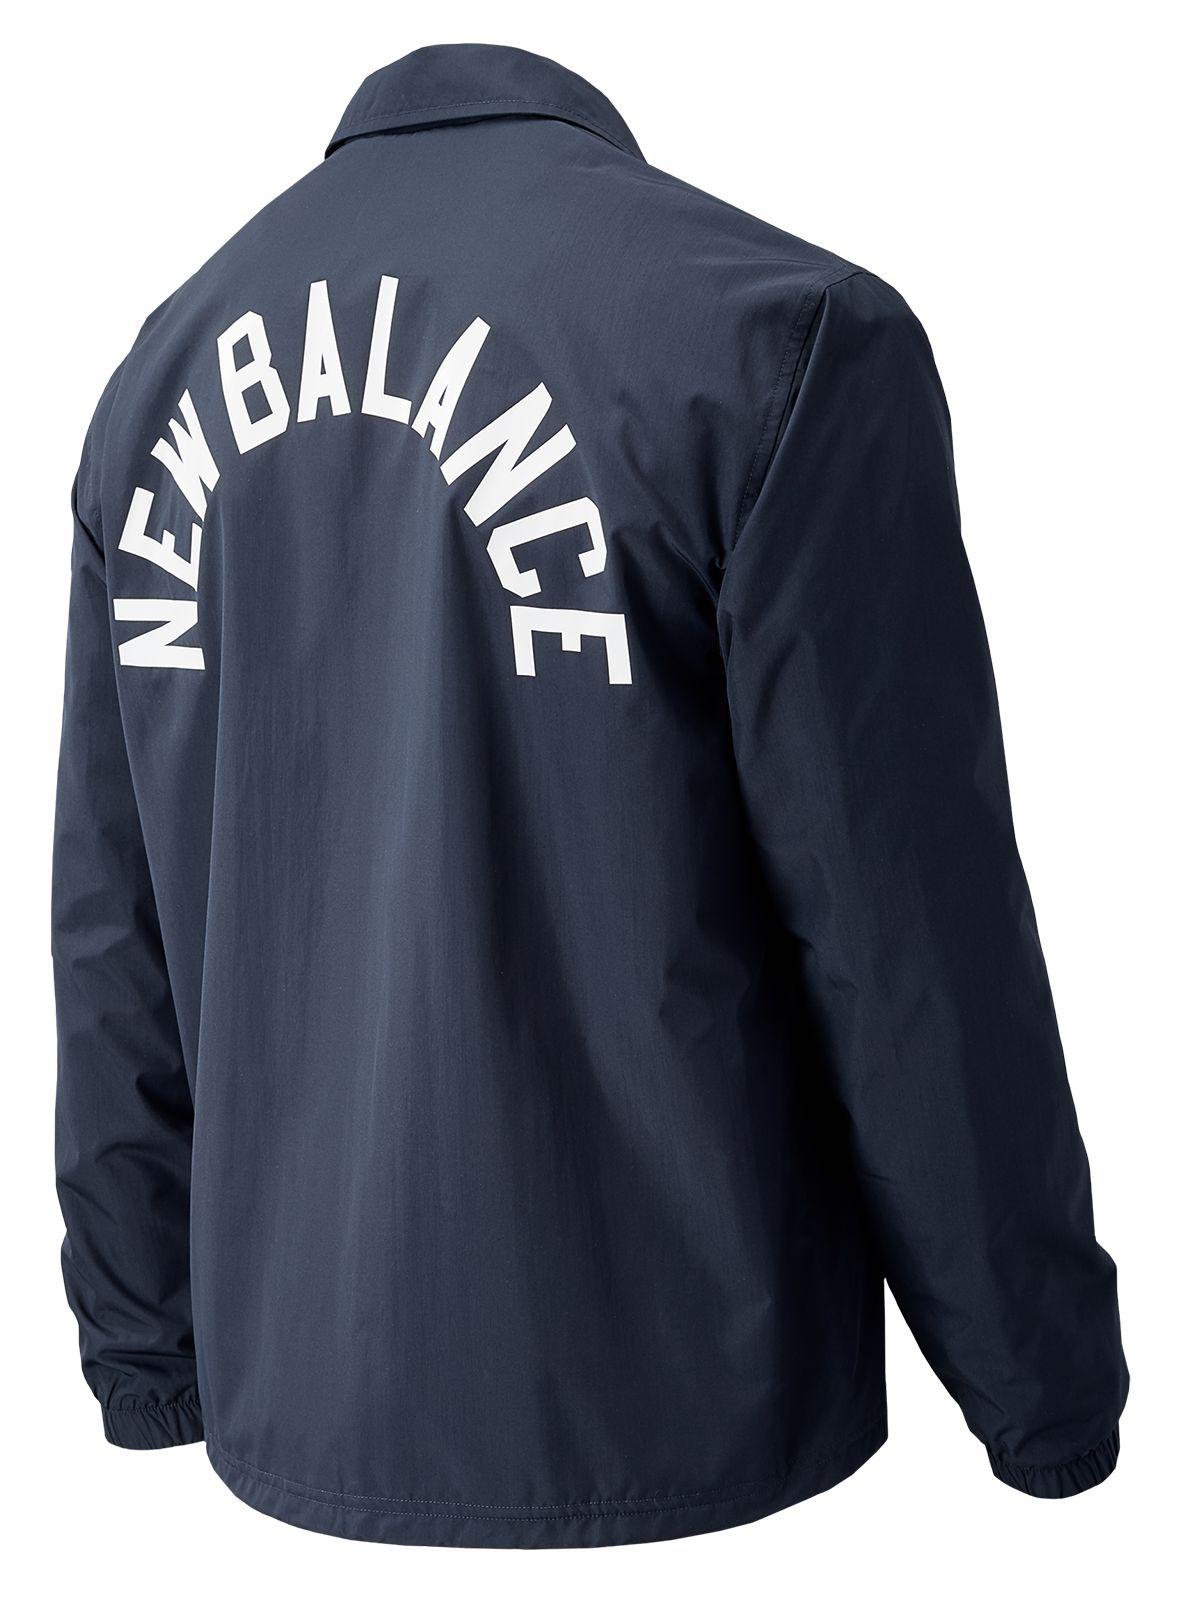 new balance classic coaches jacket